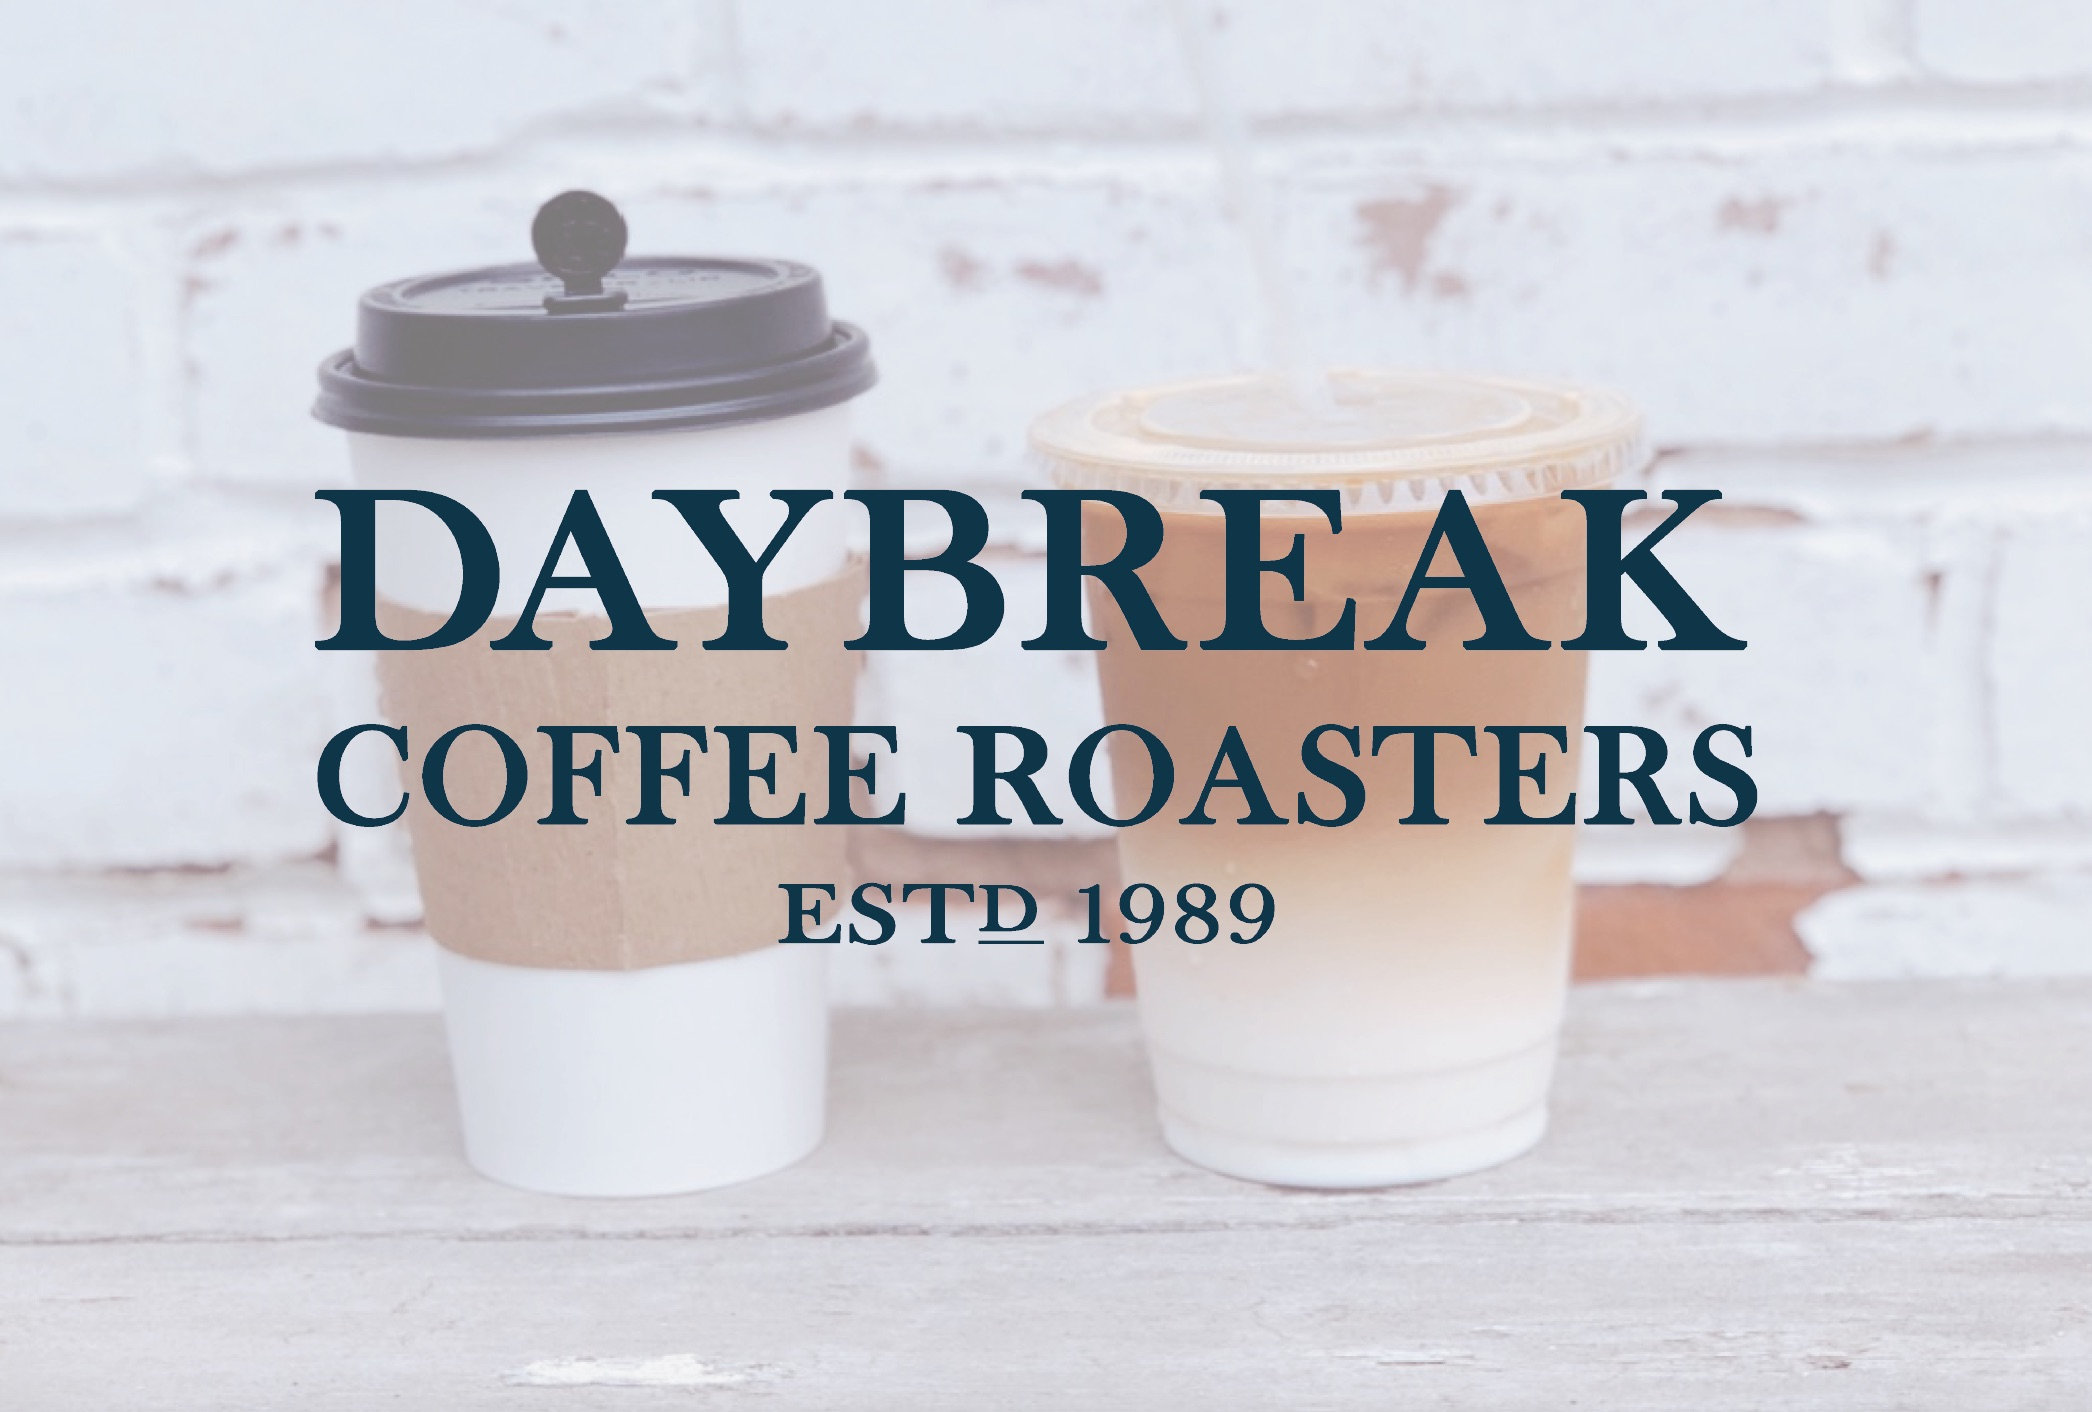 Daybreak Coffee Roasters